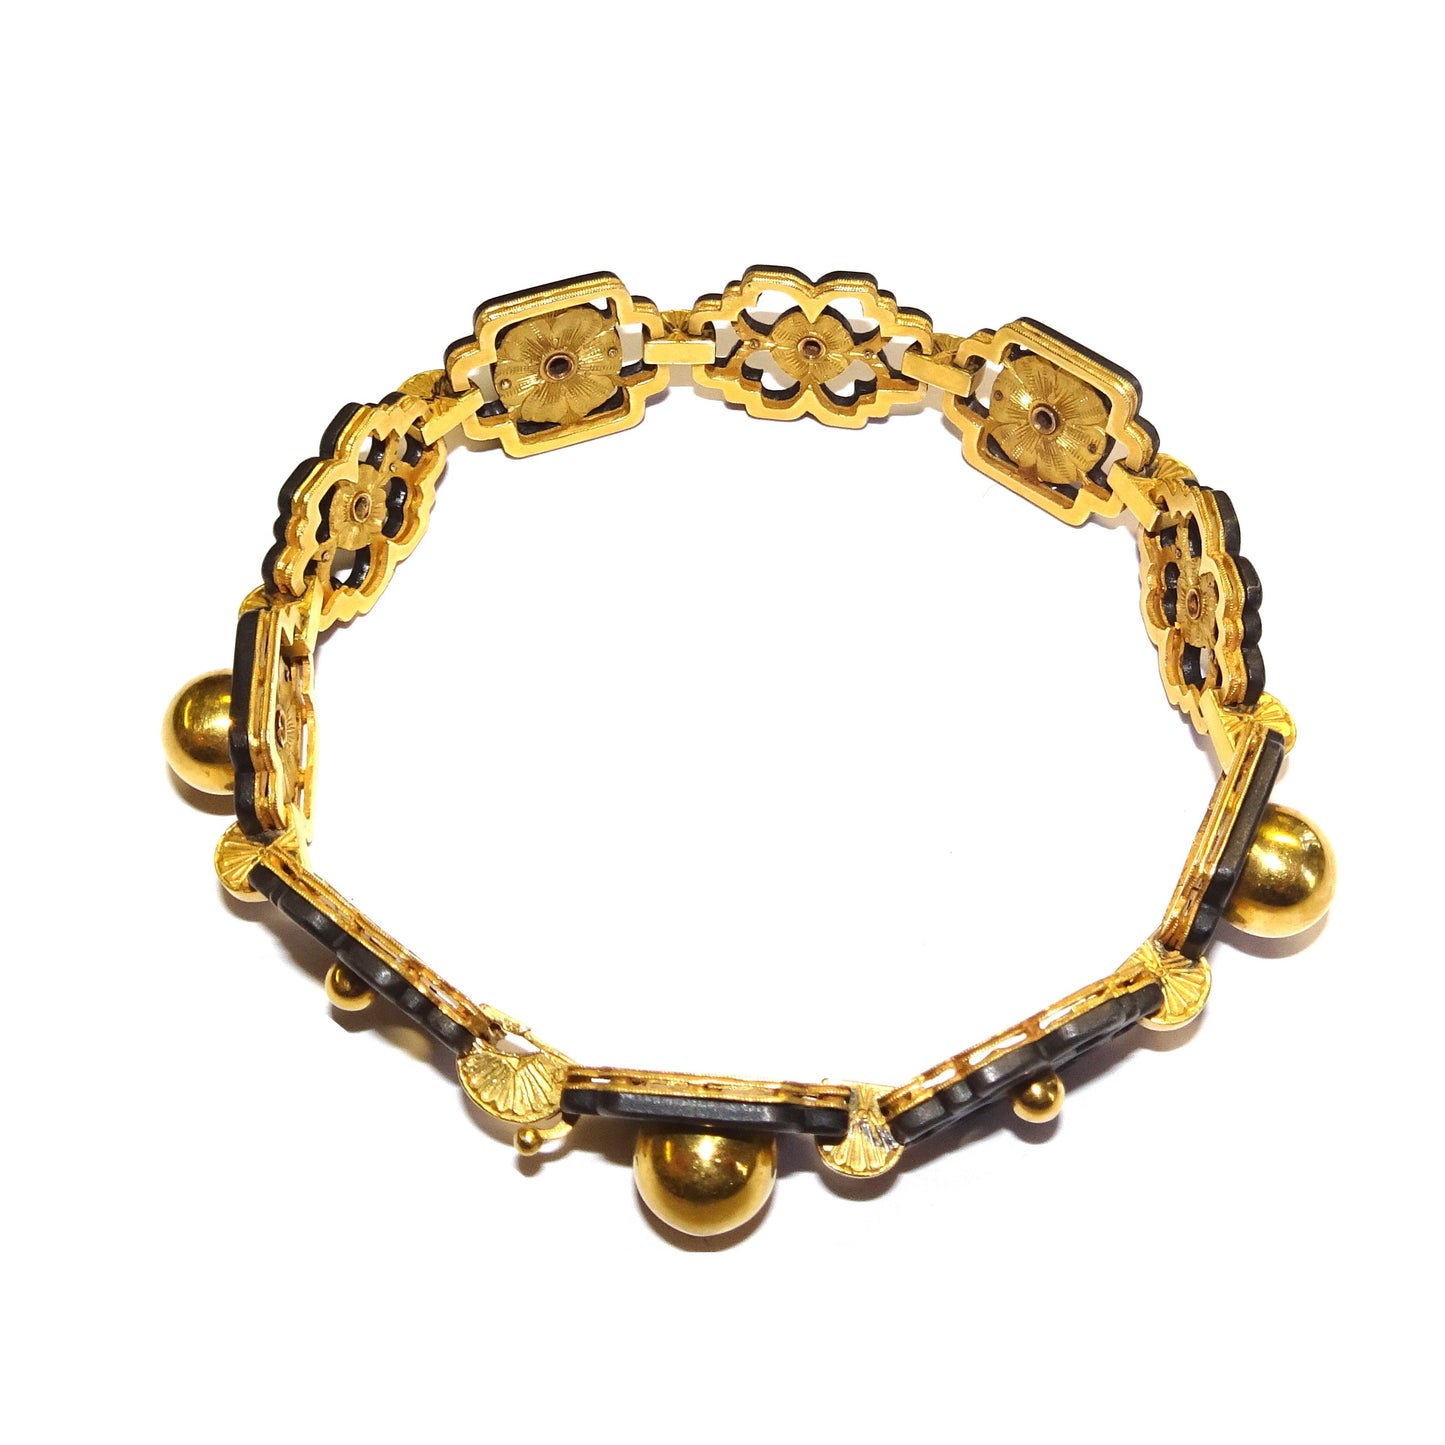 Marsh's Art Nouveau 14KT Yellow Gold Suite bracelet